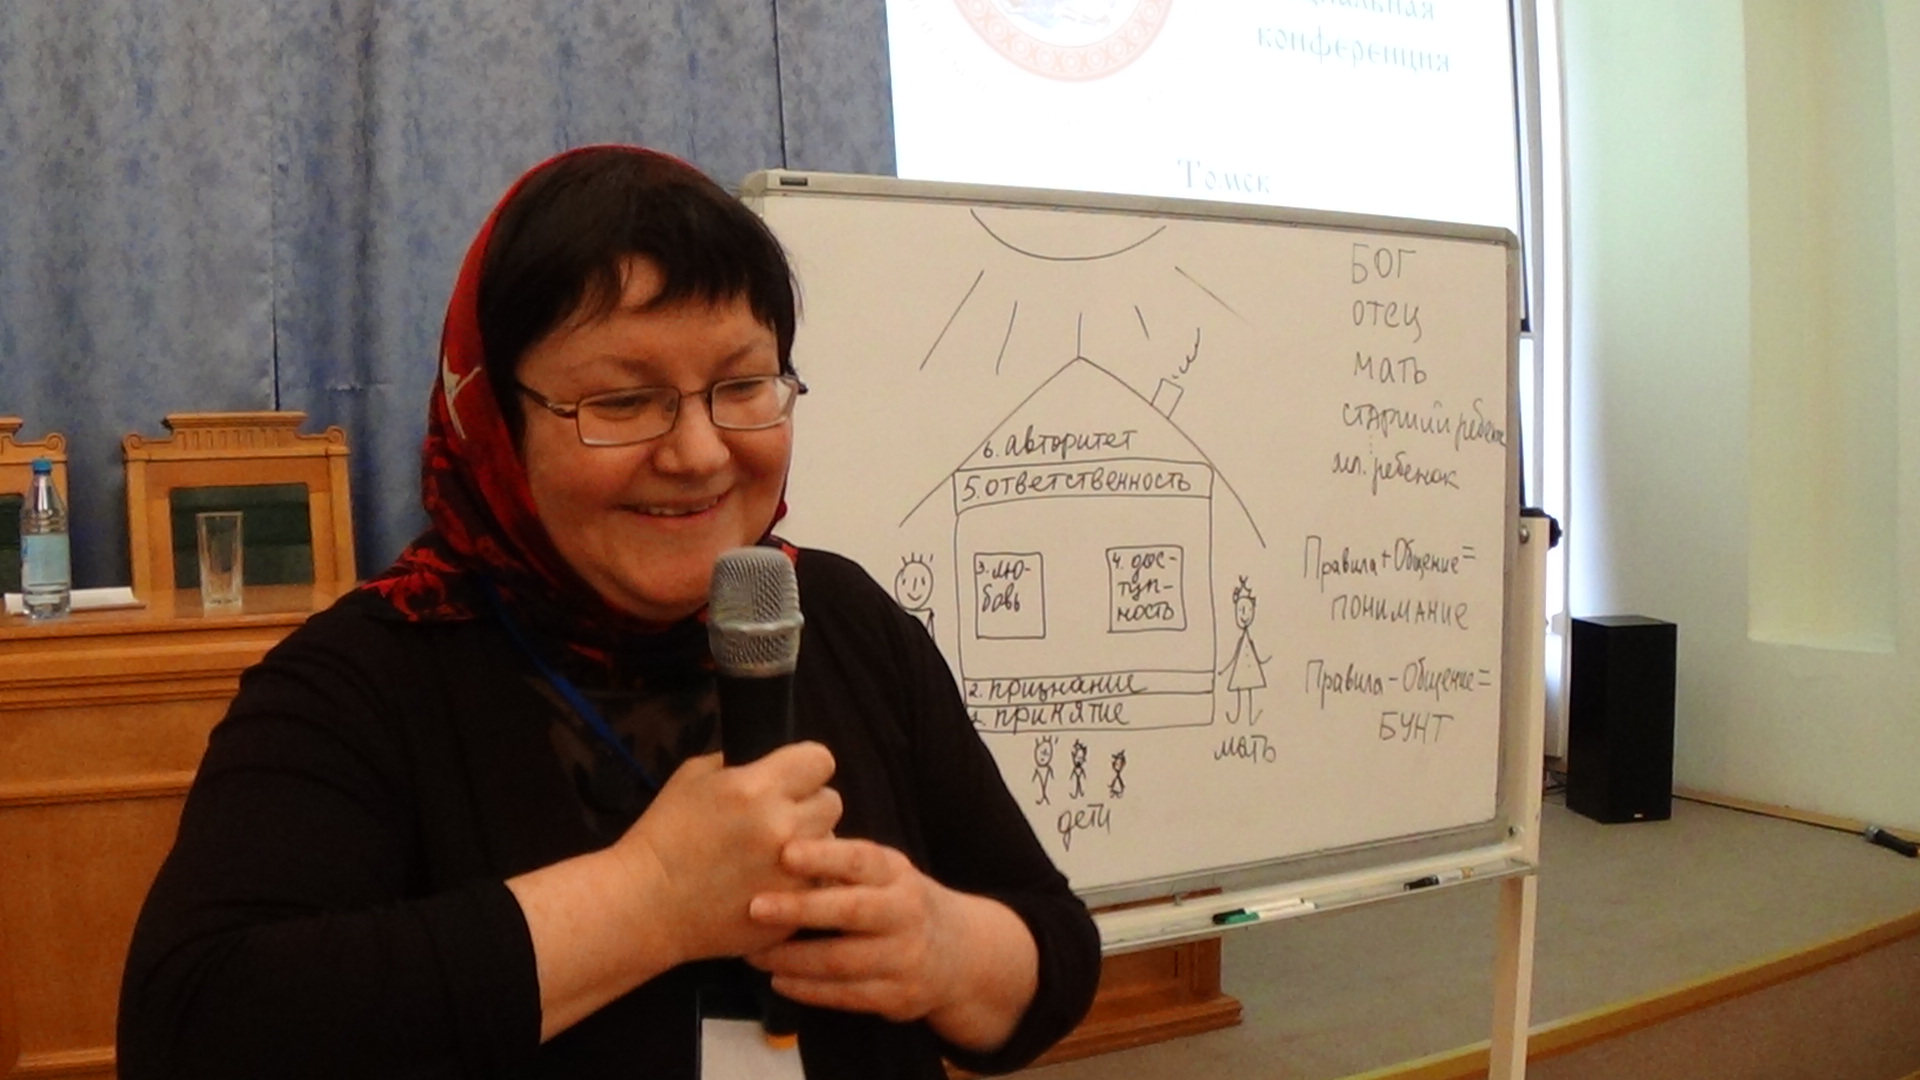 Ирина Бушуева - семейный психолог, ведущая проекта "Православные семейные встречи".